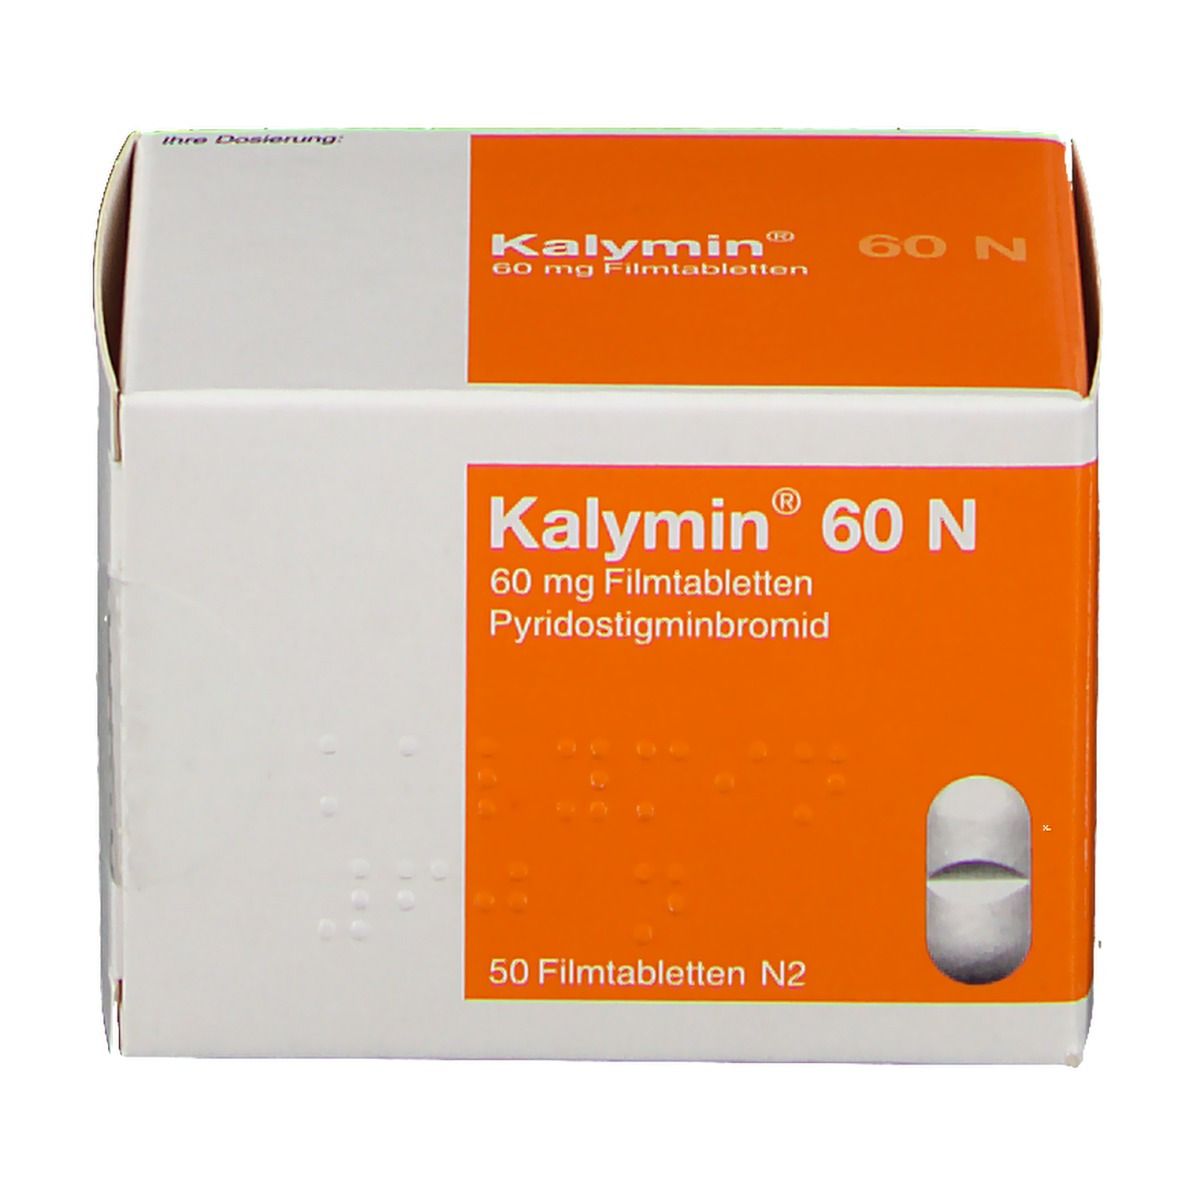 Где Можно Купить Лекарство Калимин 60 Н